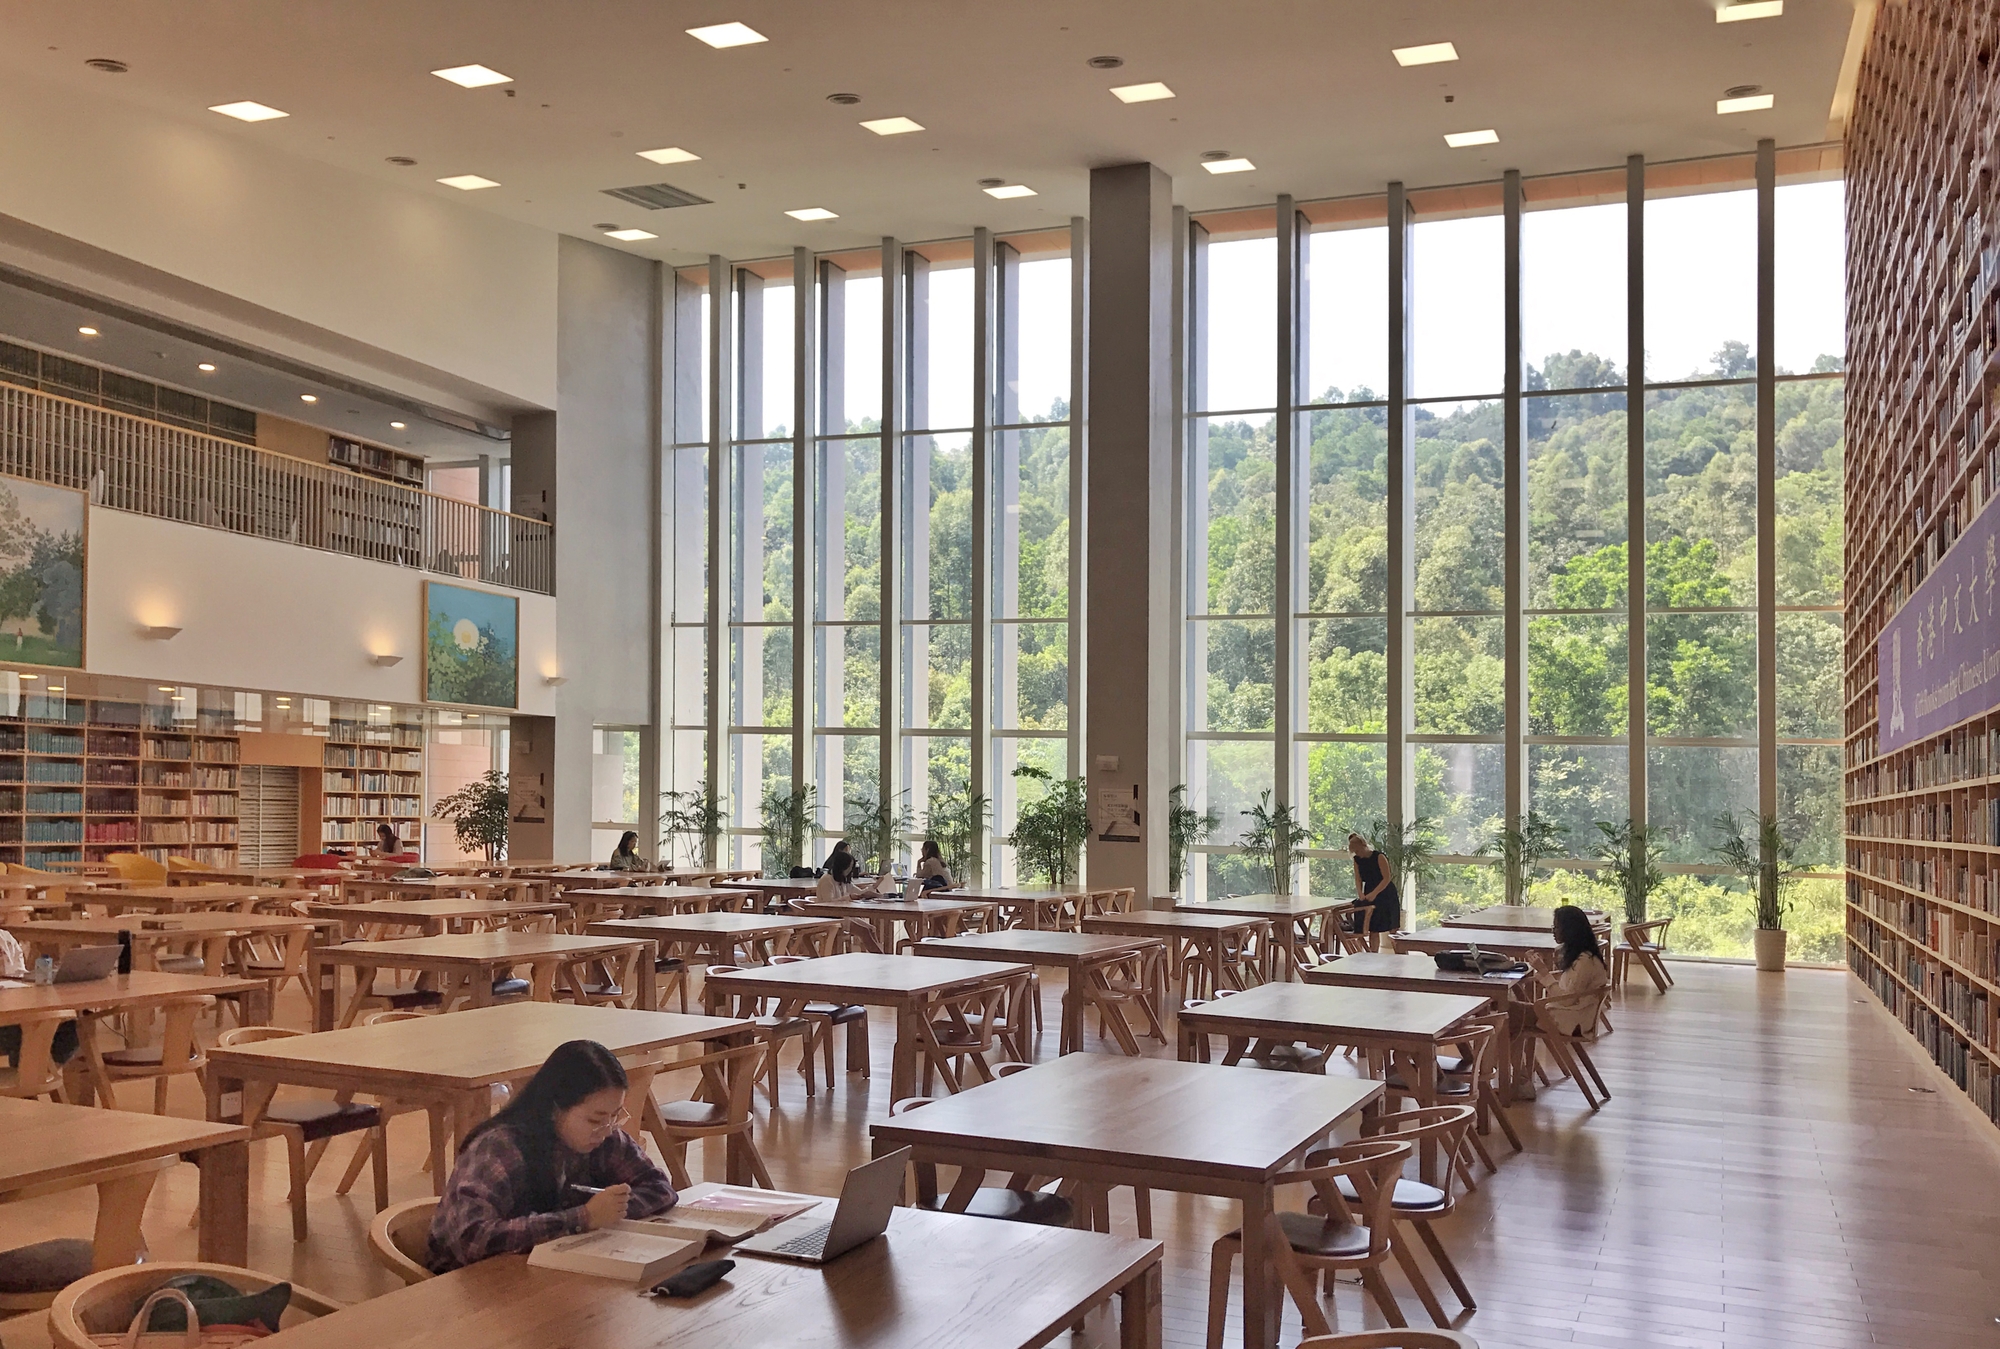 图片[8]|香港中文大学深圳校区图书馆|ART-Arrakis | 建筑室内设计的创新与灵感